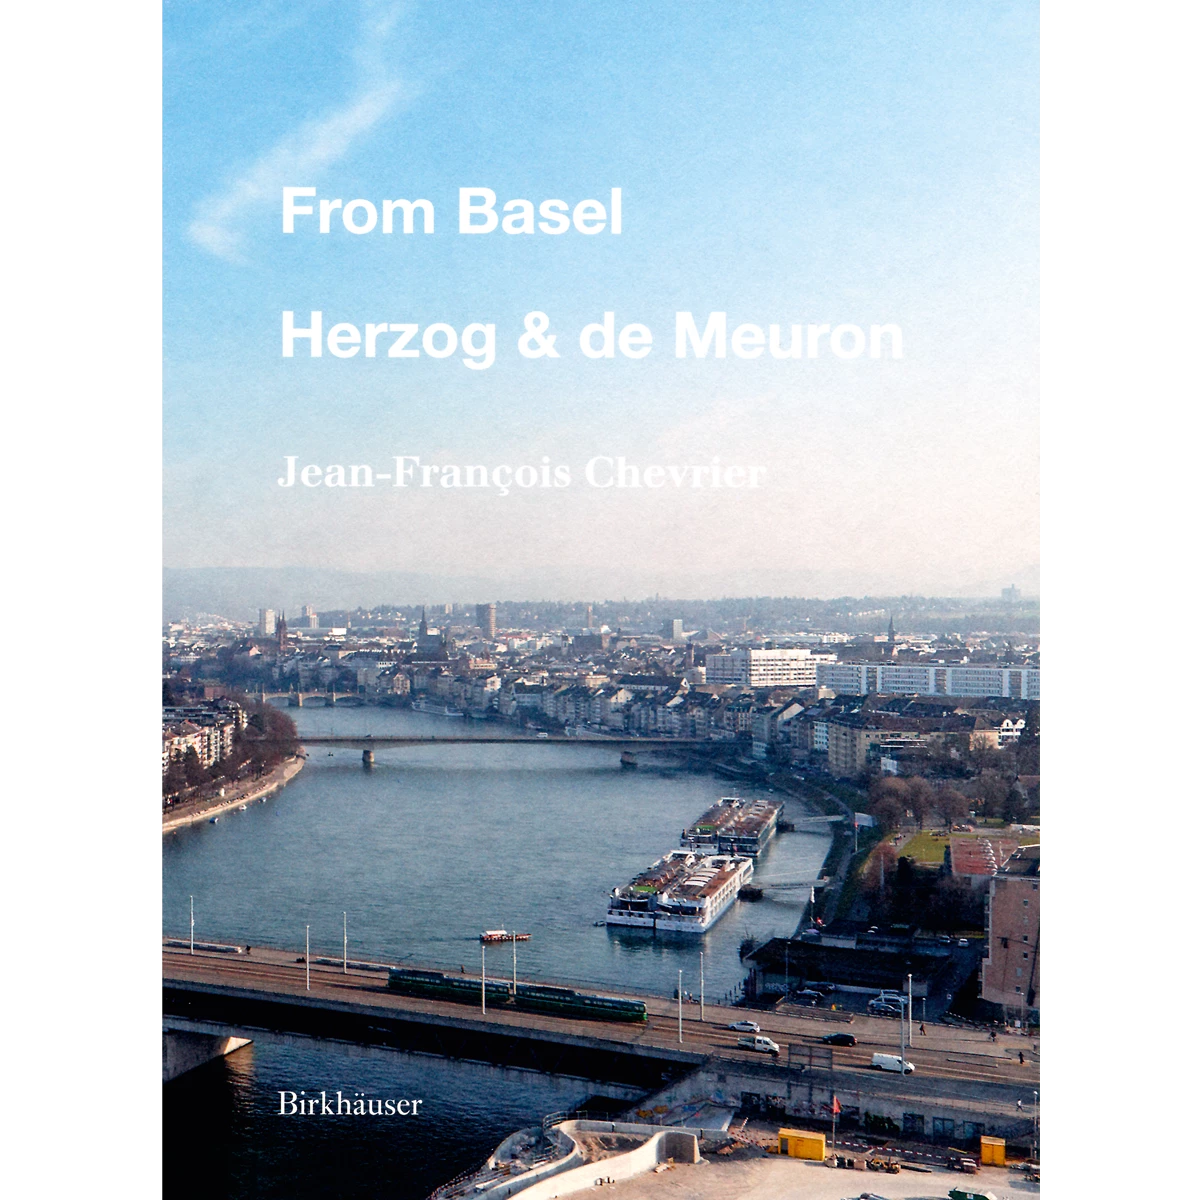 From Basel, Herzog & de Meuron